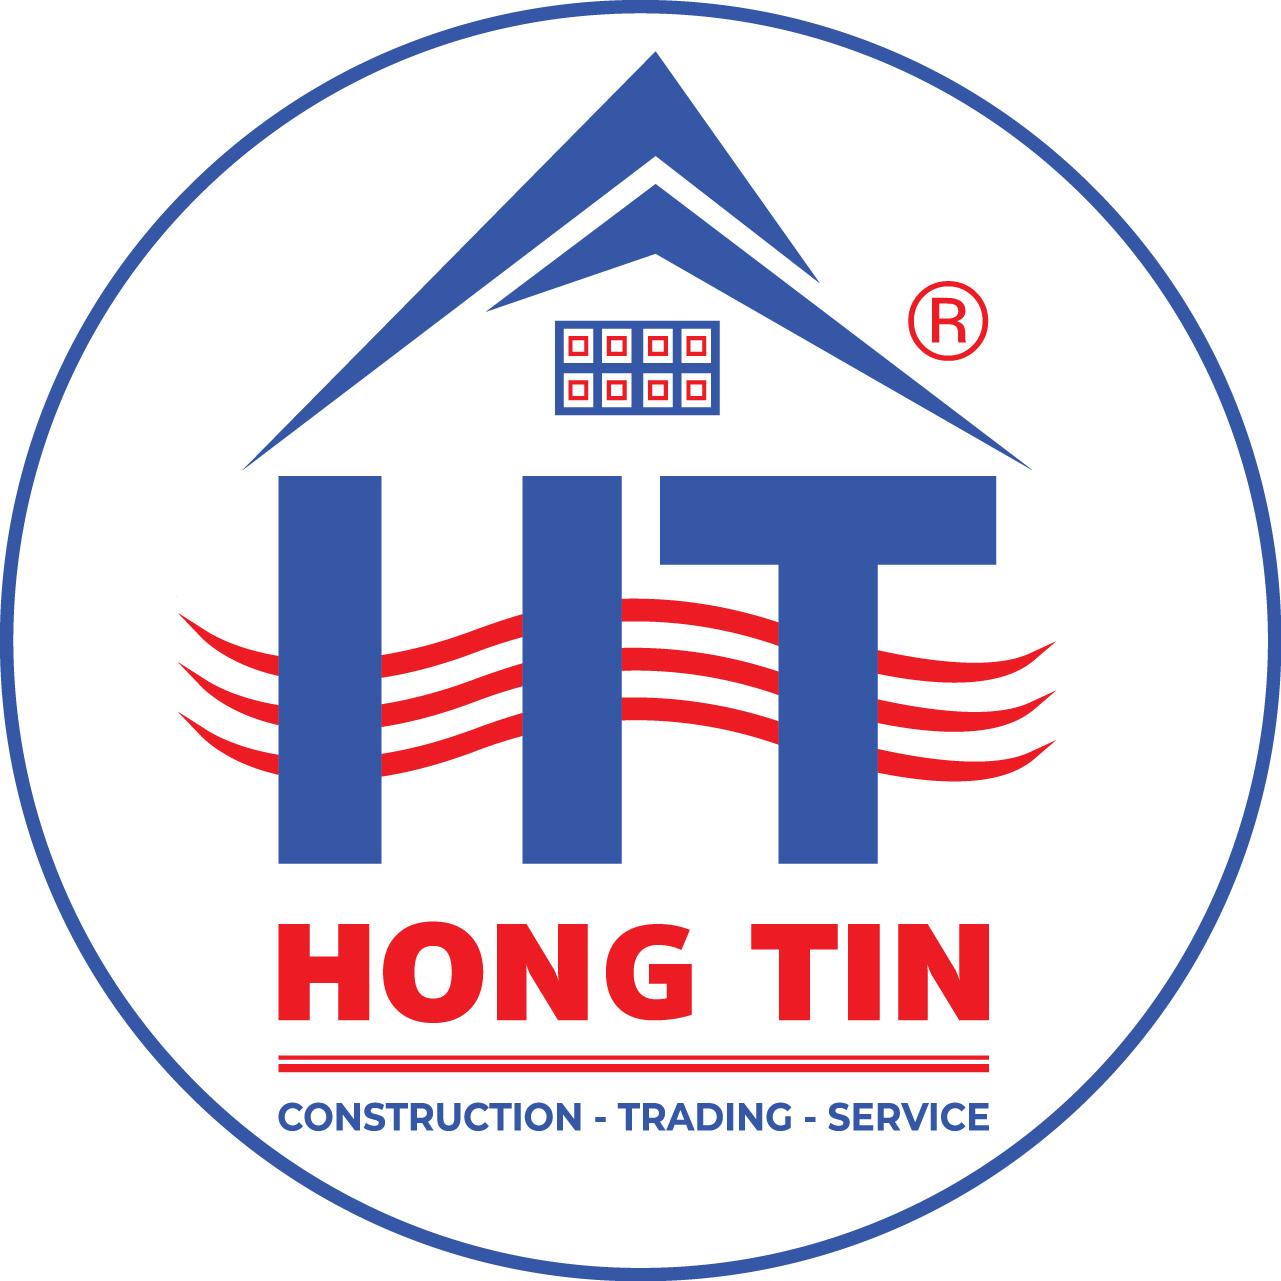 Latest Công Ty TNHH Xây Dựng Thương Mại Dịch Vụ Hồng Tín employment/hiring with high salary & attractive benefits